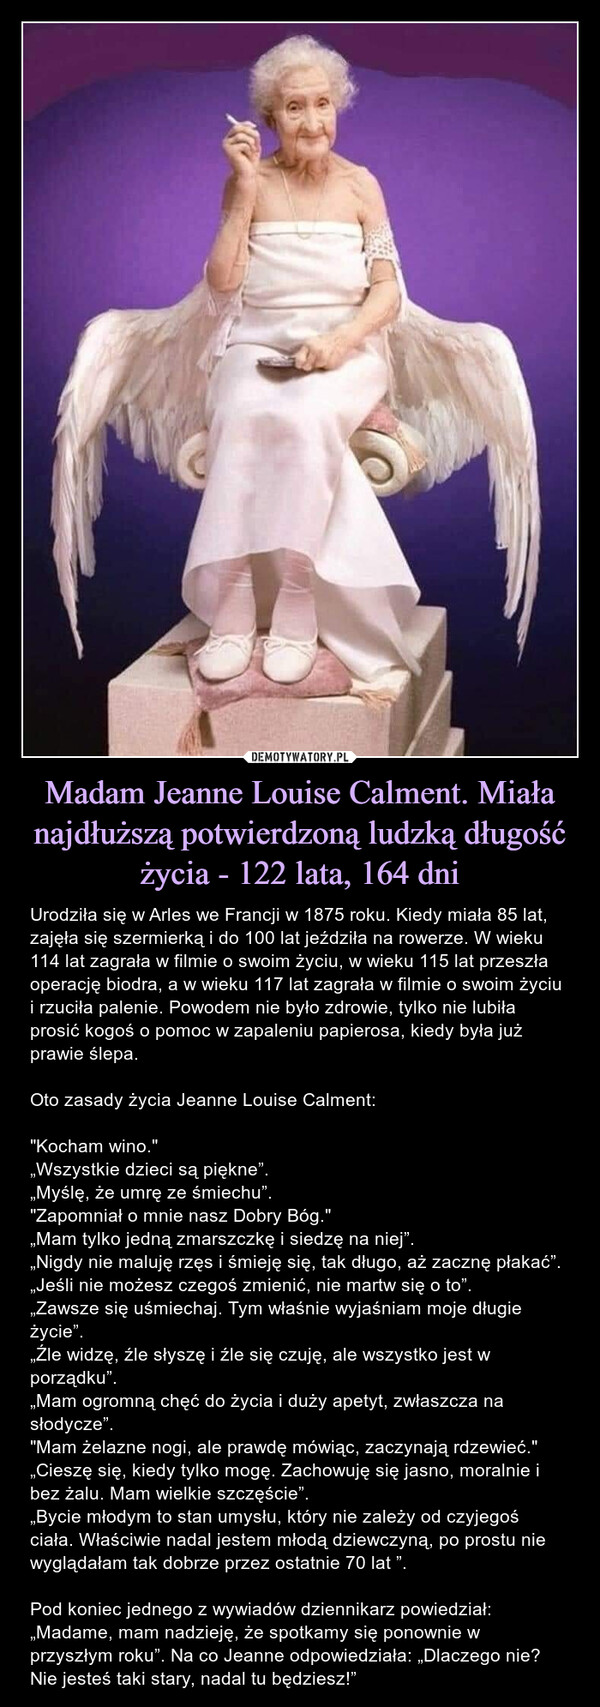 Madam Jeanne Louise Calment. Miała najdłuższą potwierdzoną ludzką długość życia - 122 lata, 164 dni